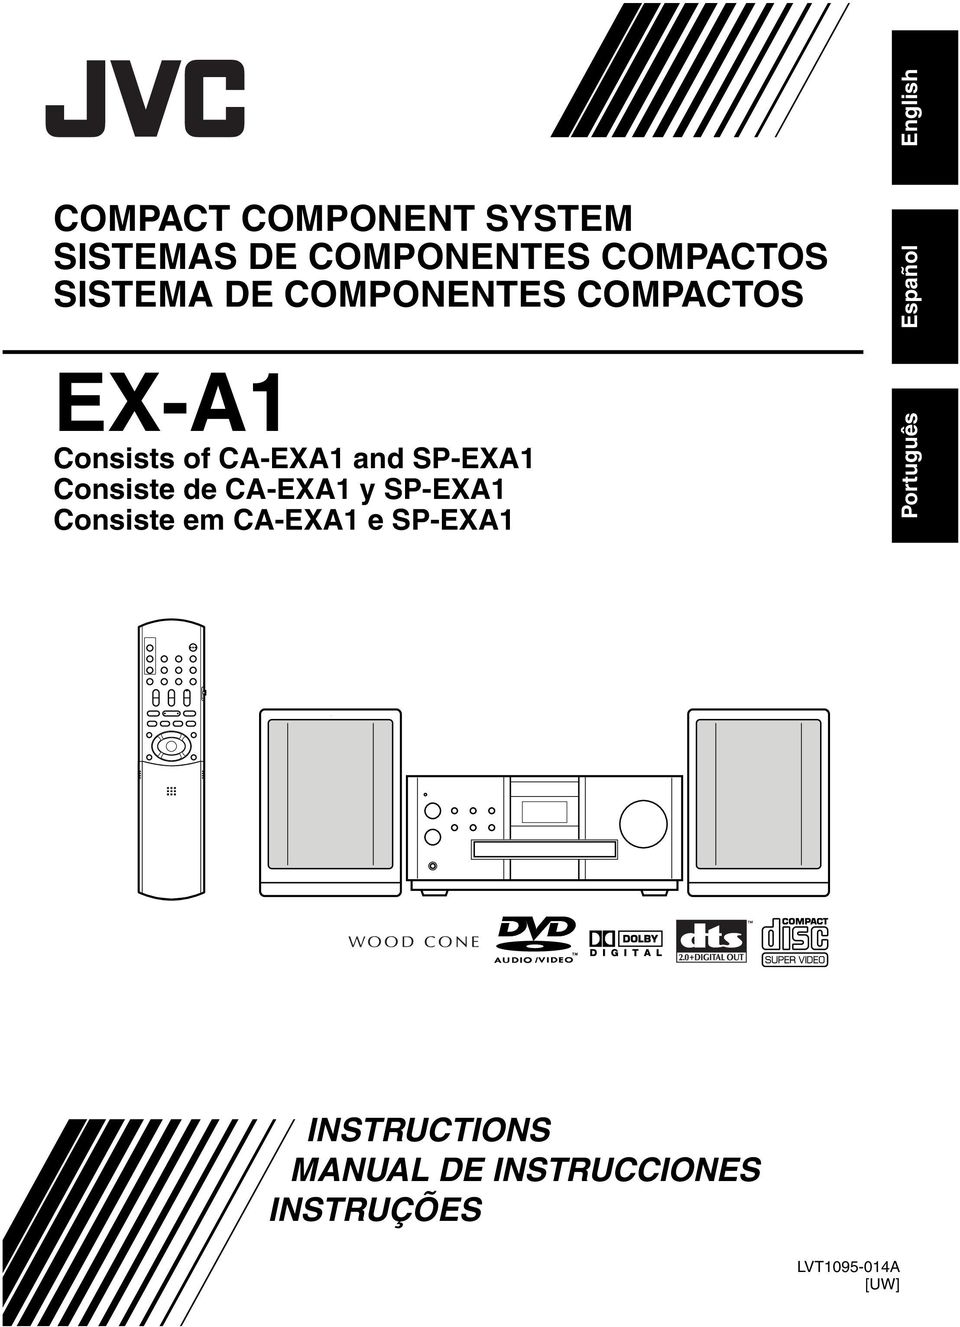 Consiste de CA-EXA1 y SP-EXA1 Consiste em CA-EXA1 e SP-EXA1 Español